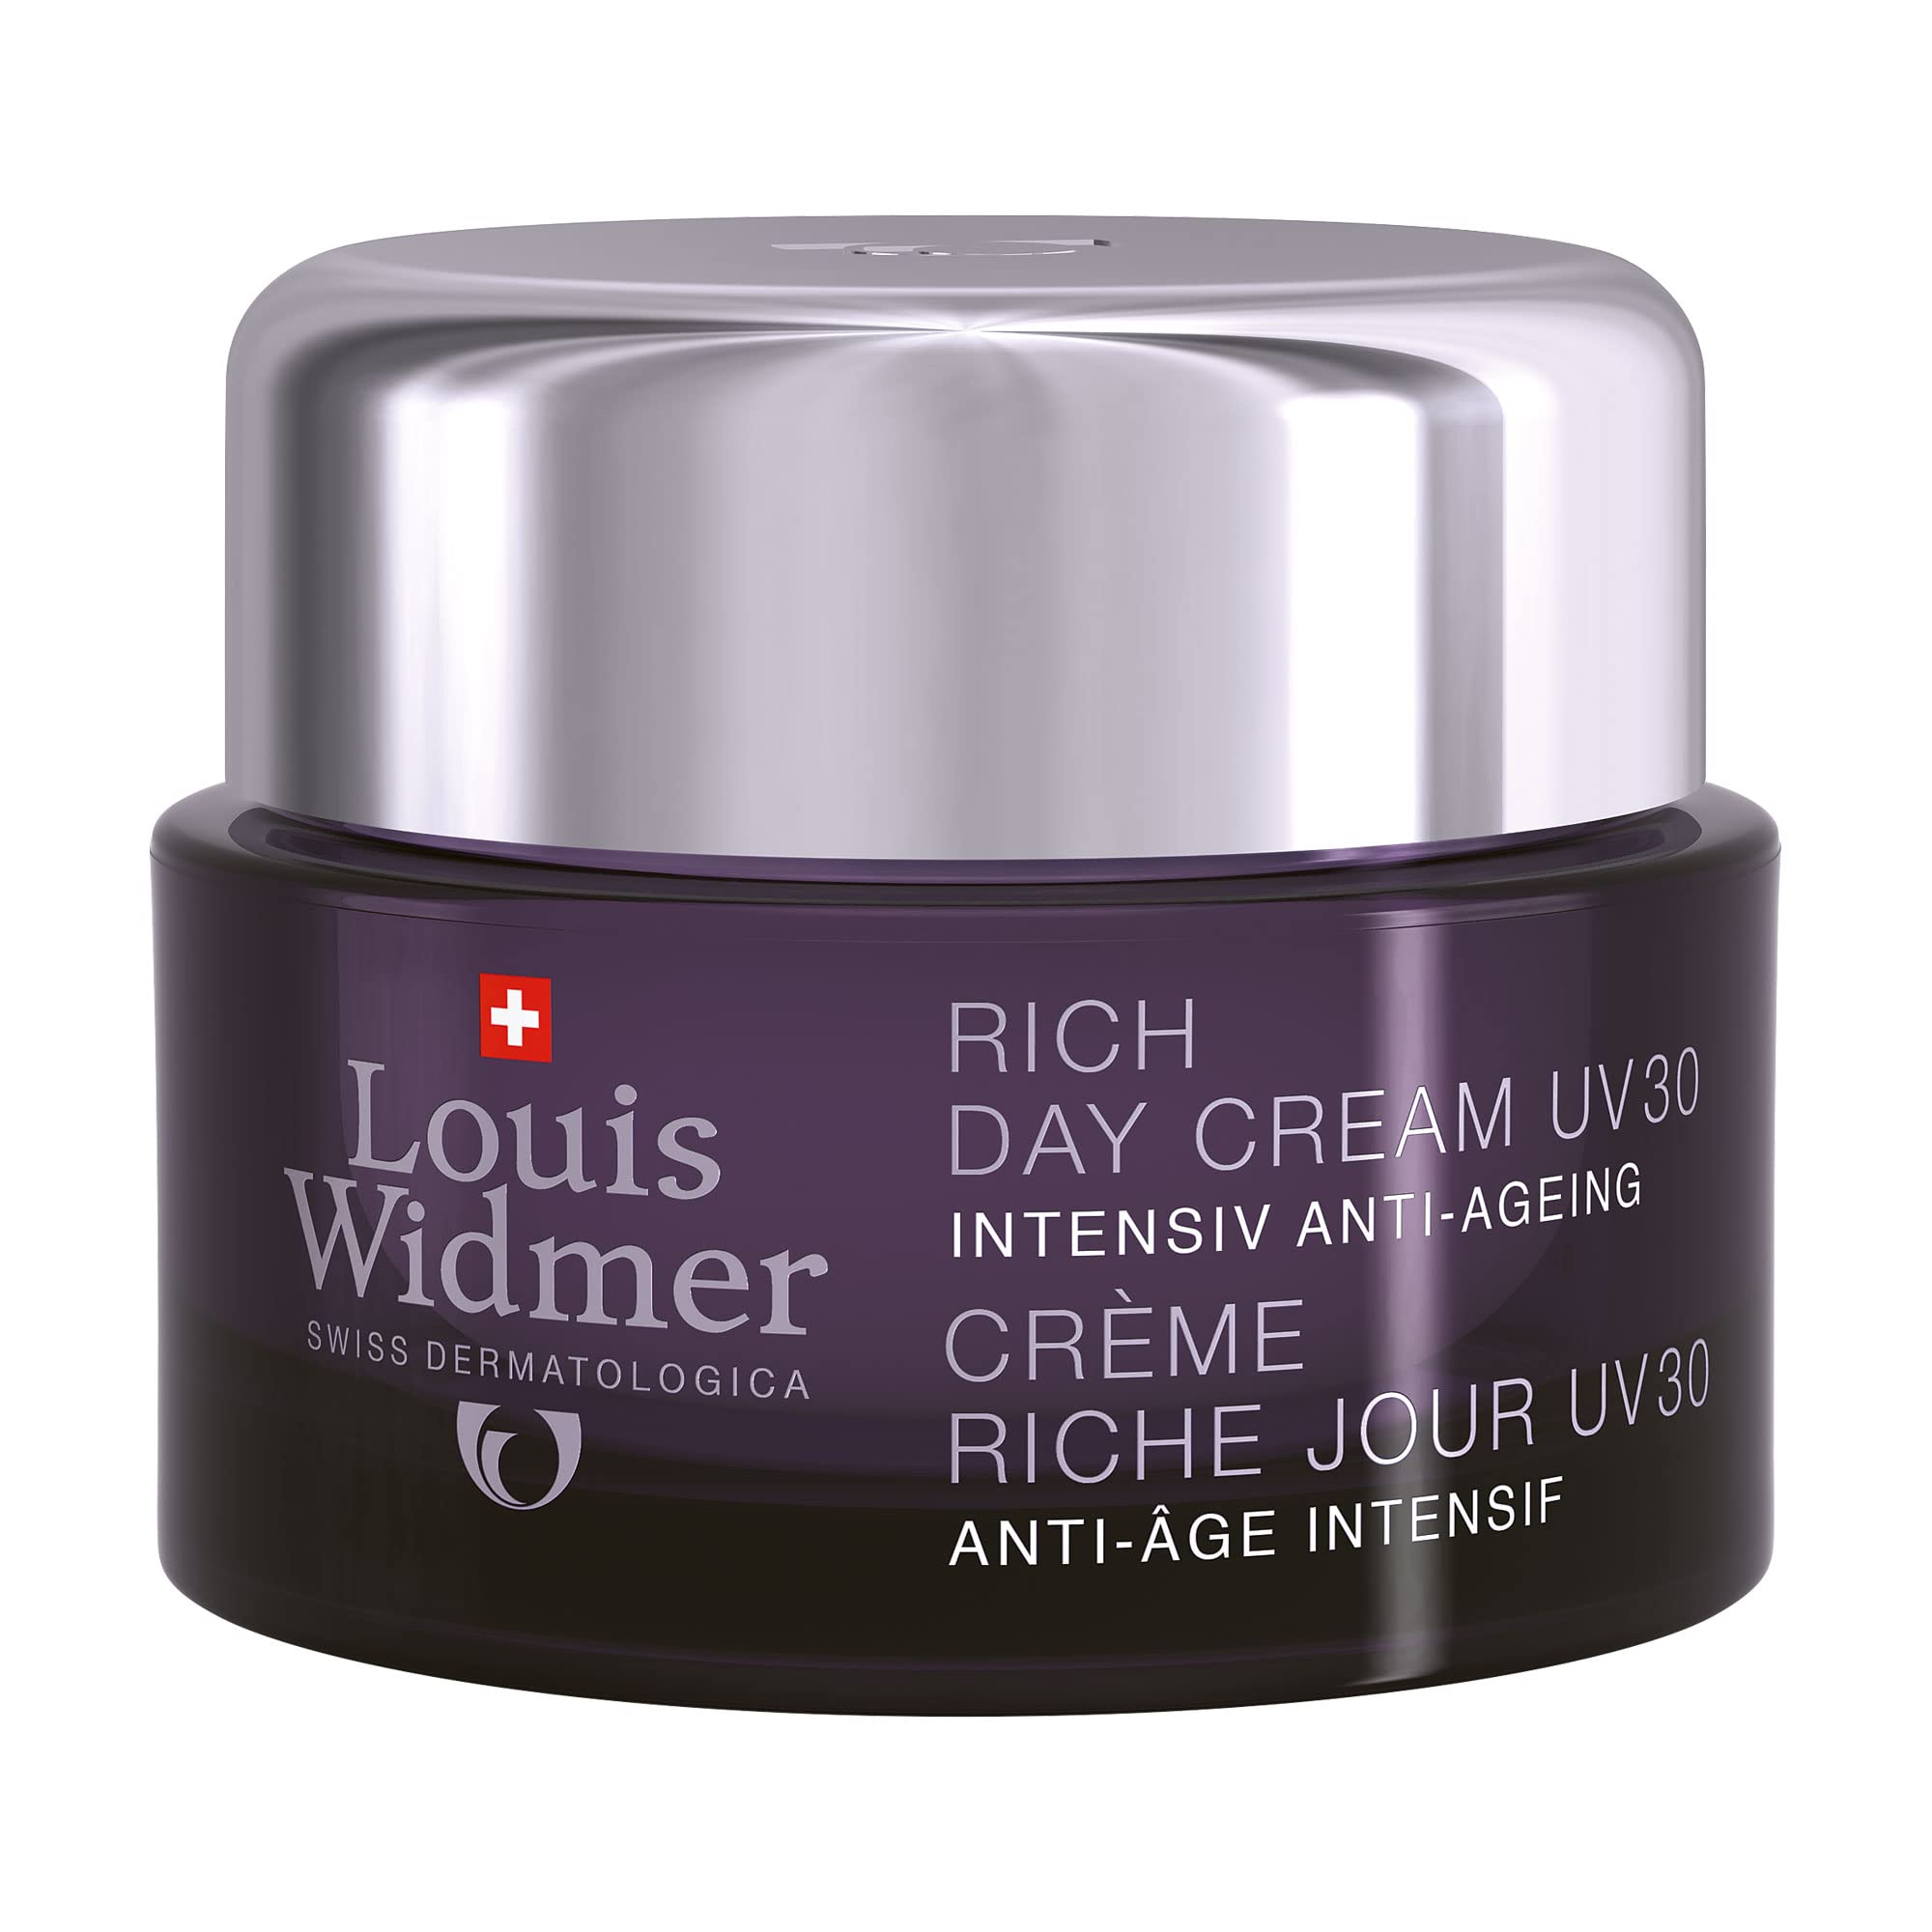 Widmer Rich Day Cream UV 30 unparfmiert, 50 ml